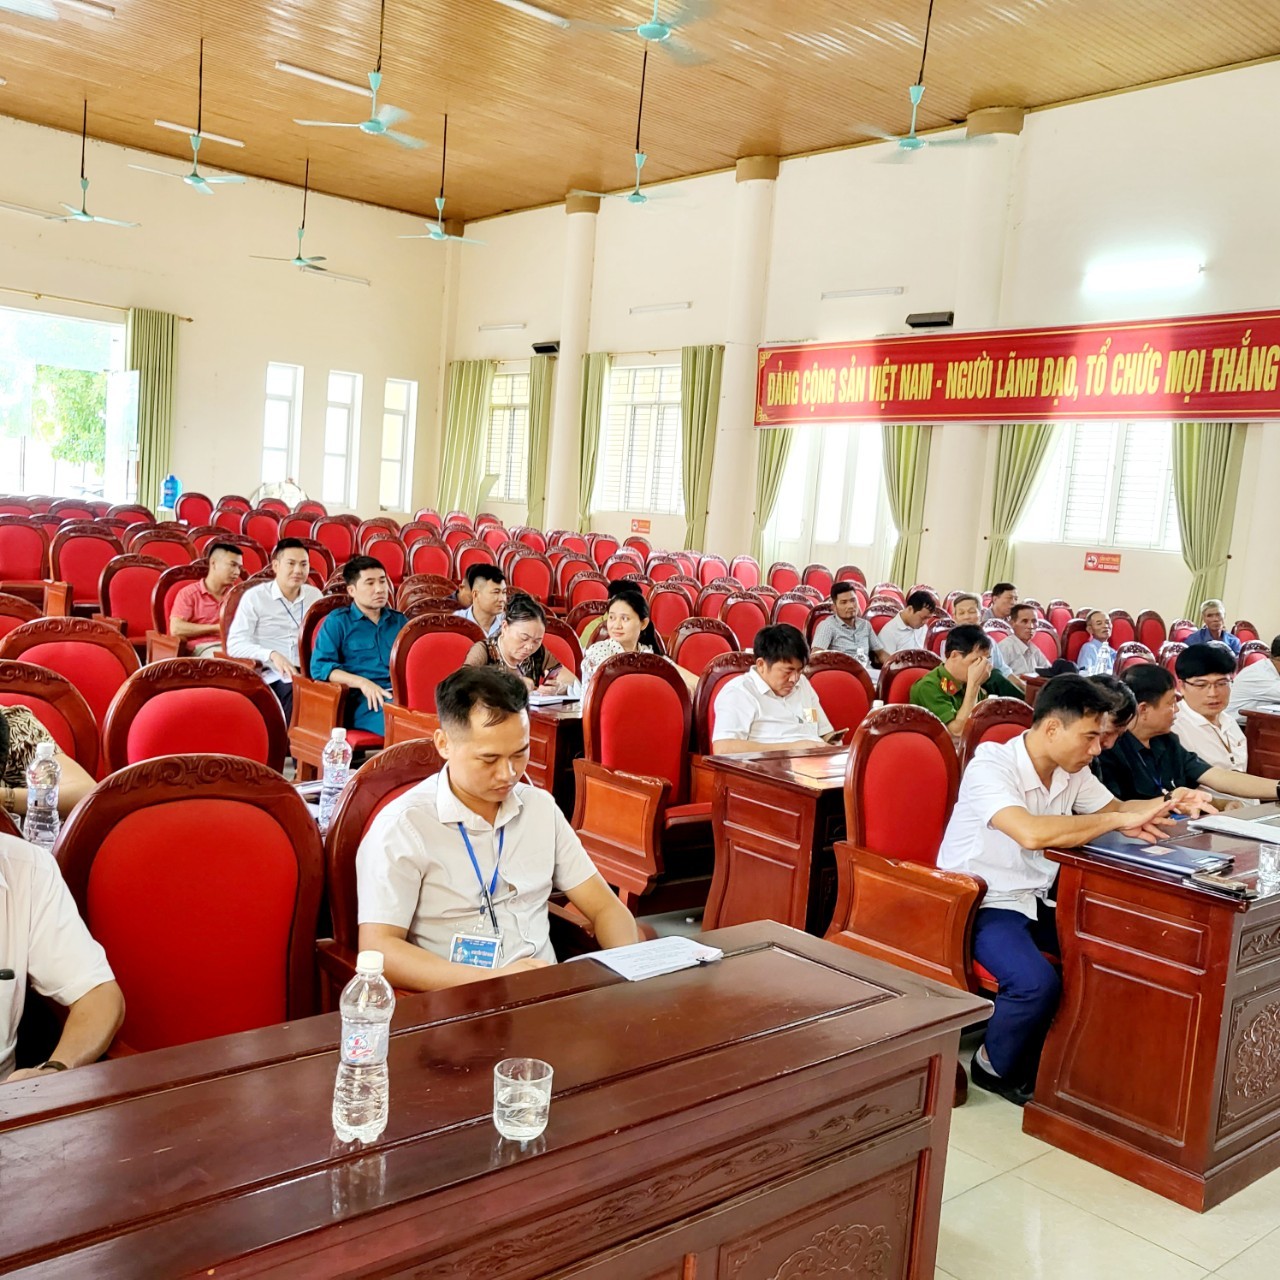 THÔNG BÁO  Kết quả kỳ họp thứ bảy, Hội đồng nhân dân xã Quảng Ninh  Khóa XXI, nhiệm kỳ 2021 -2026